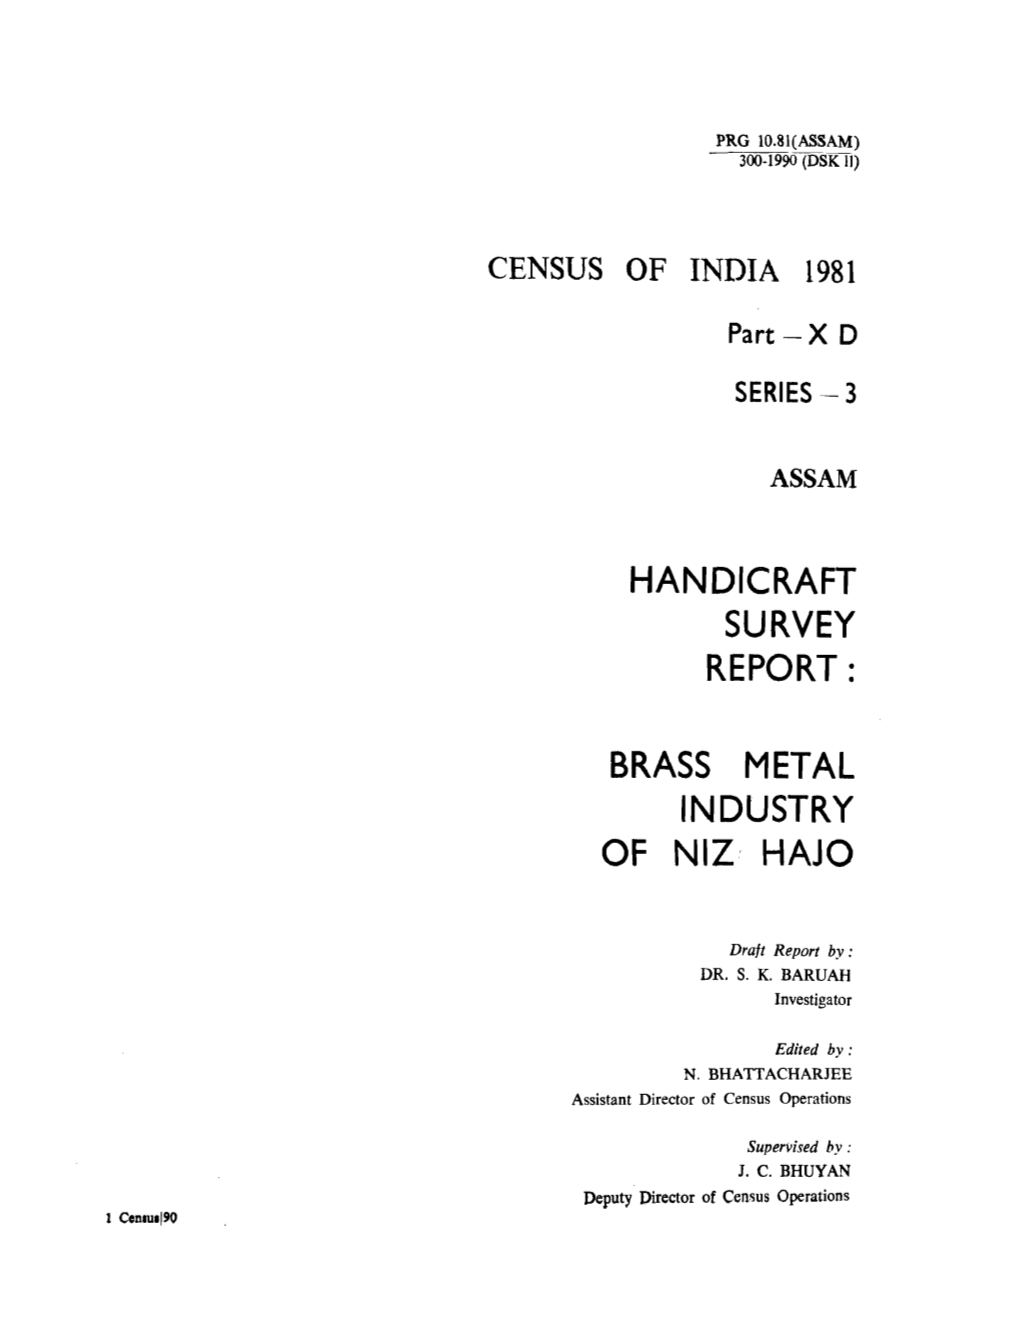 Handicraft Survey Report, Brass Metal Industry of Niz Hajo, Part X D